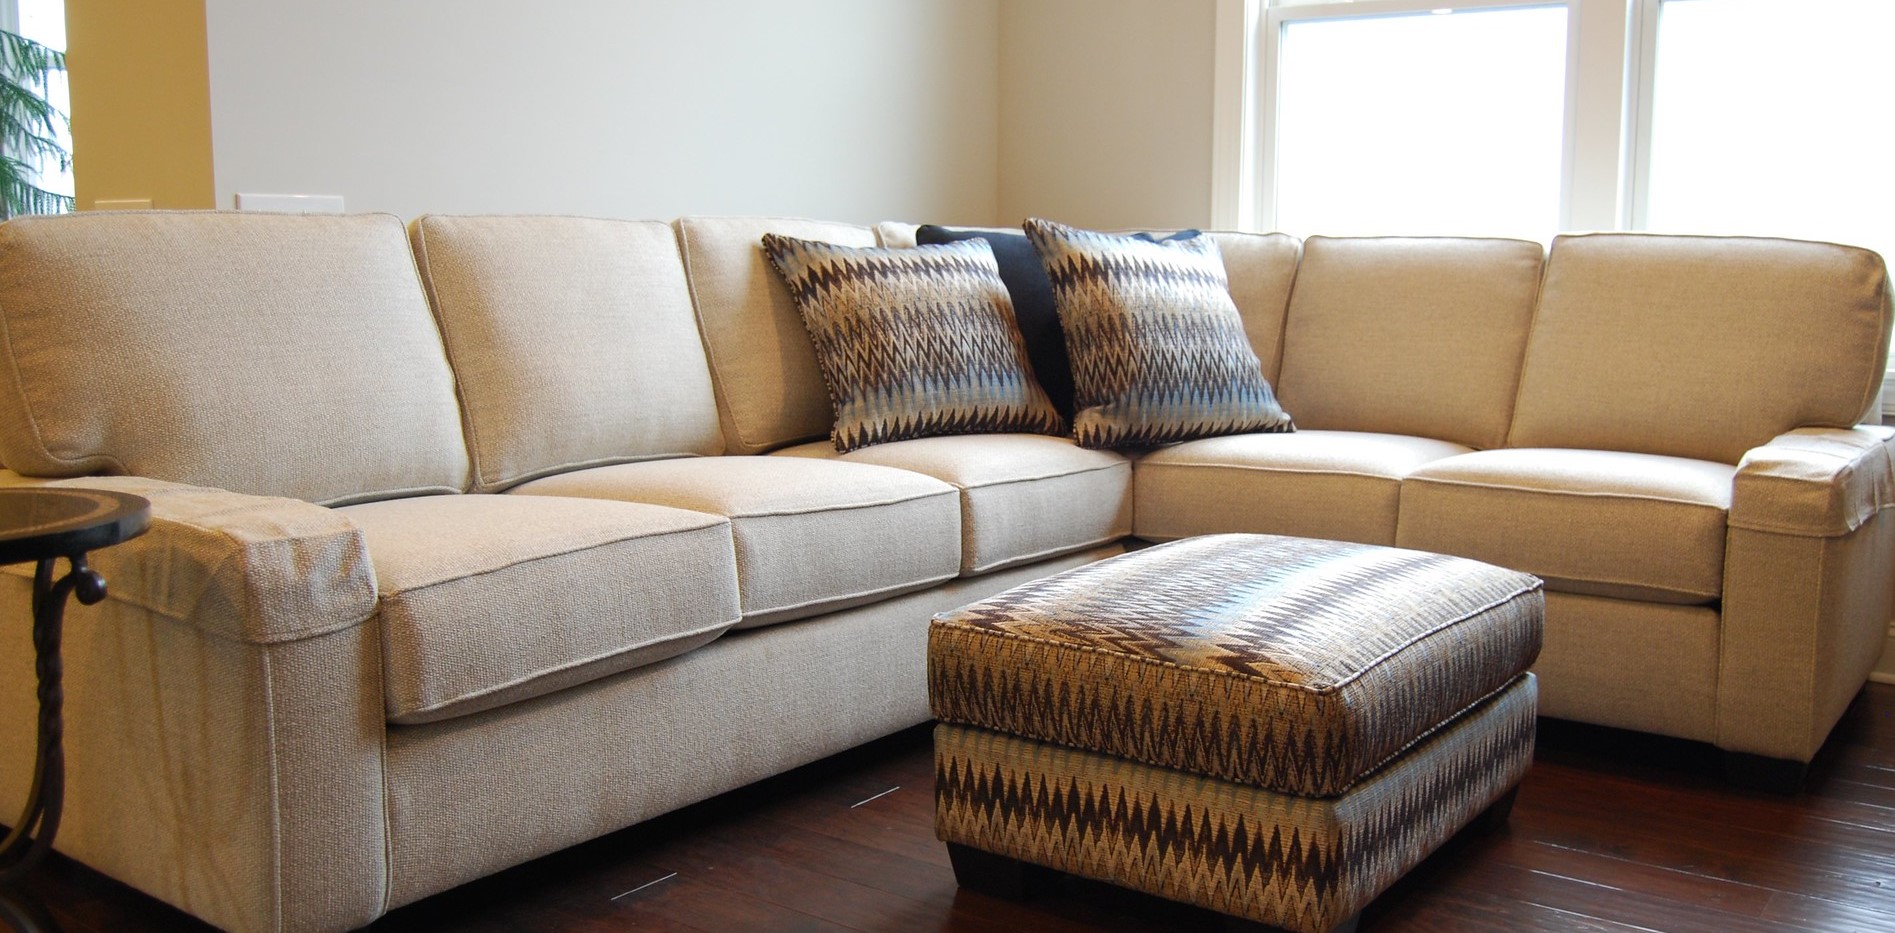 Бежевый диван отлично гармонирует с коричневым полом в интерьере